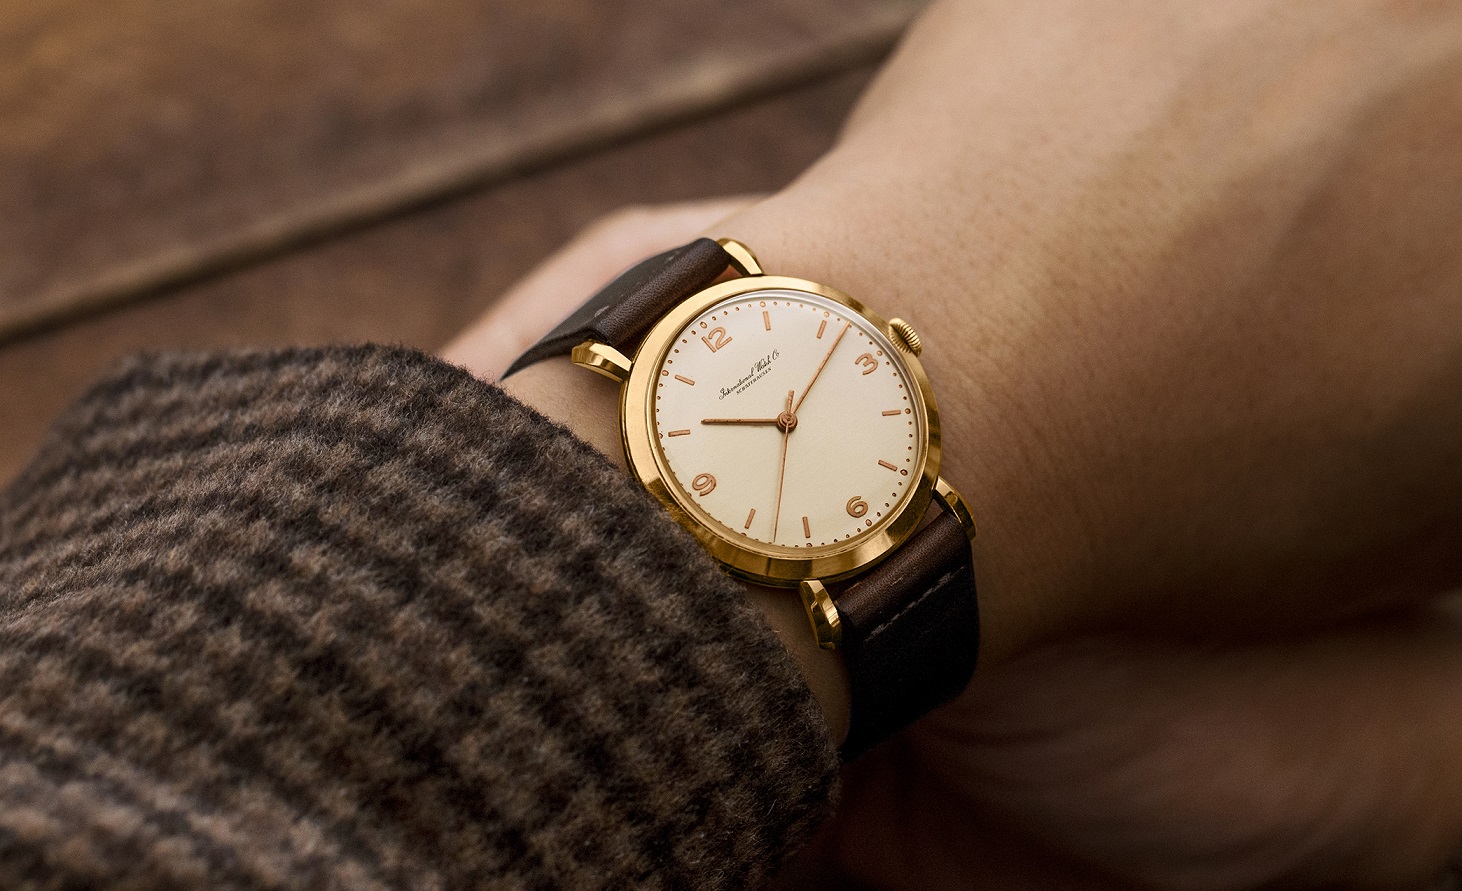 ساعت مچی مینیمال زنانه - ویژگی های ساعت مچی کلاسیک